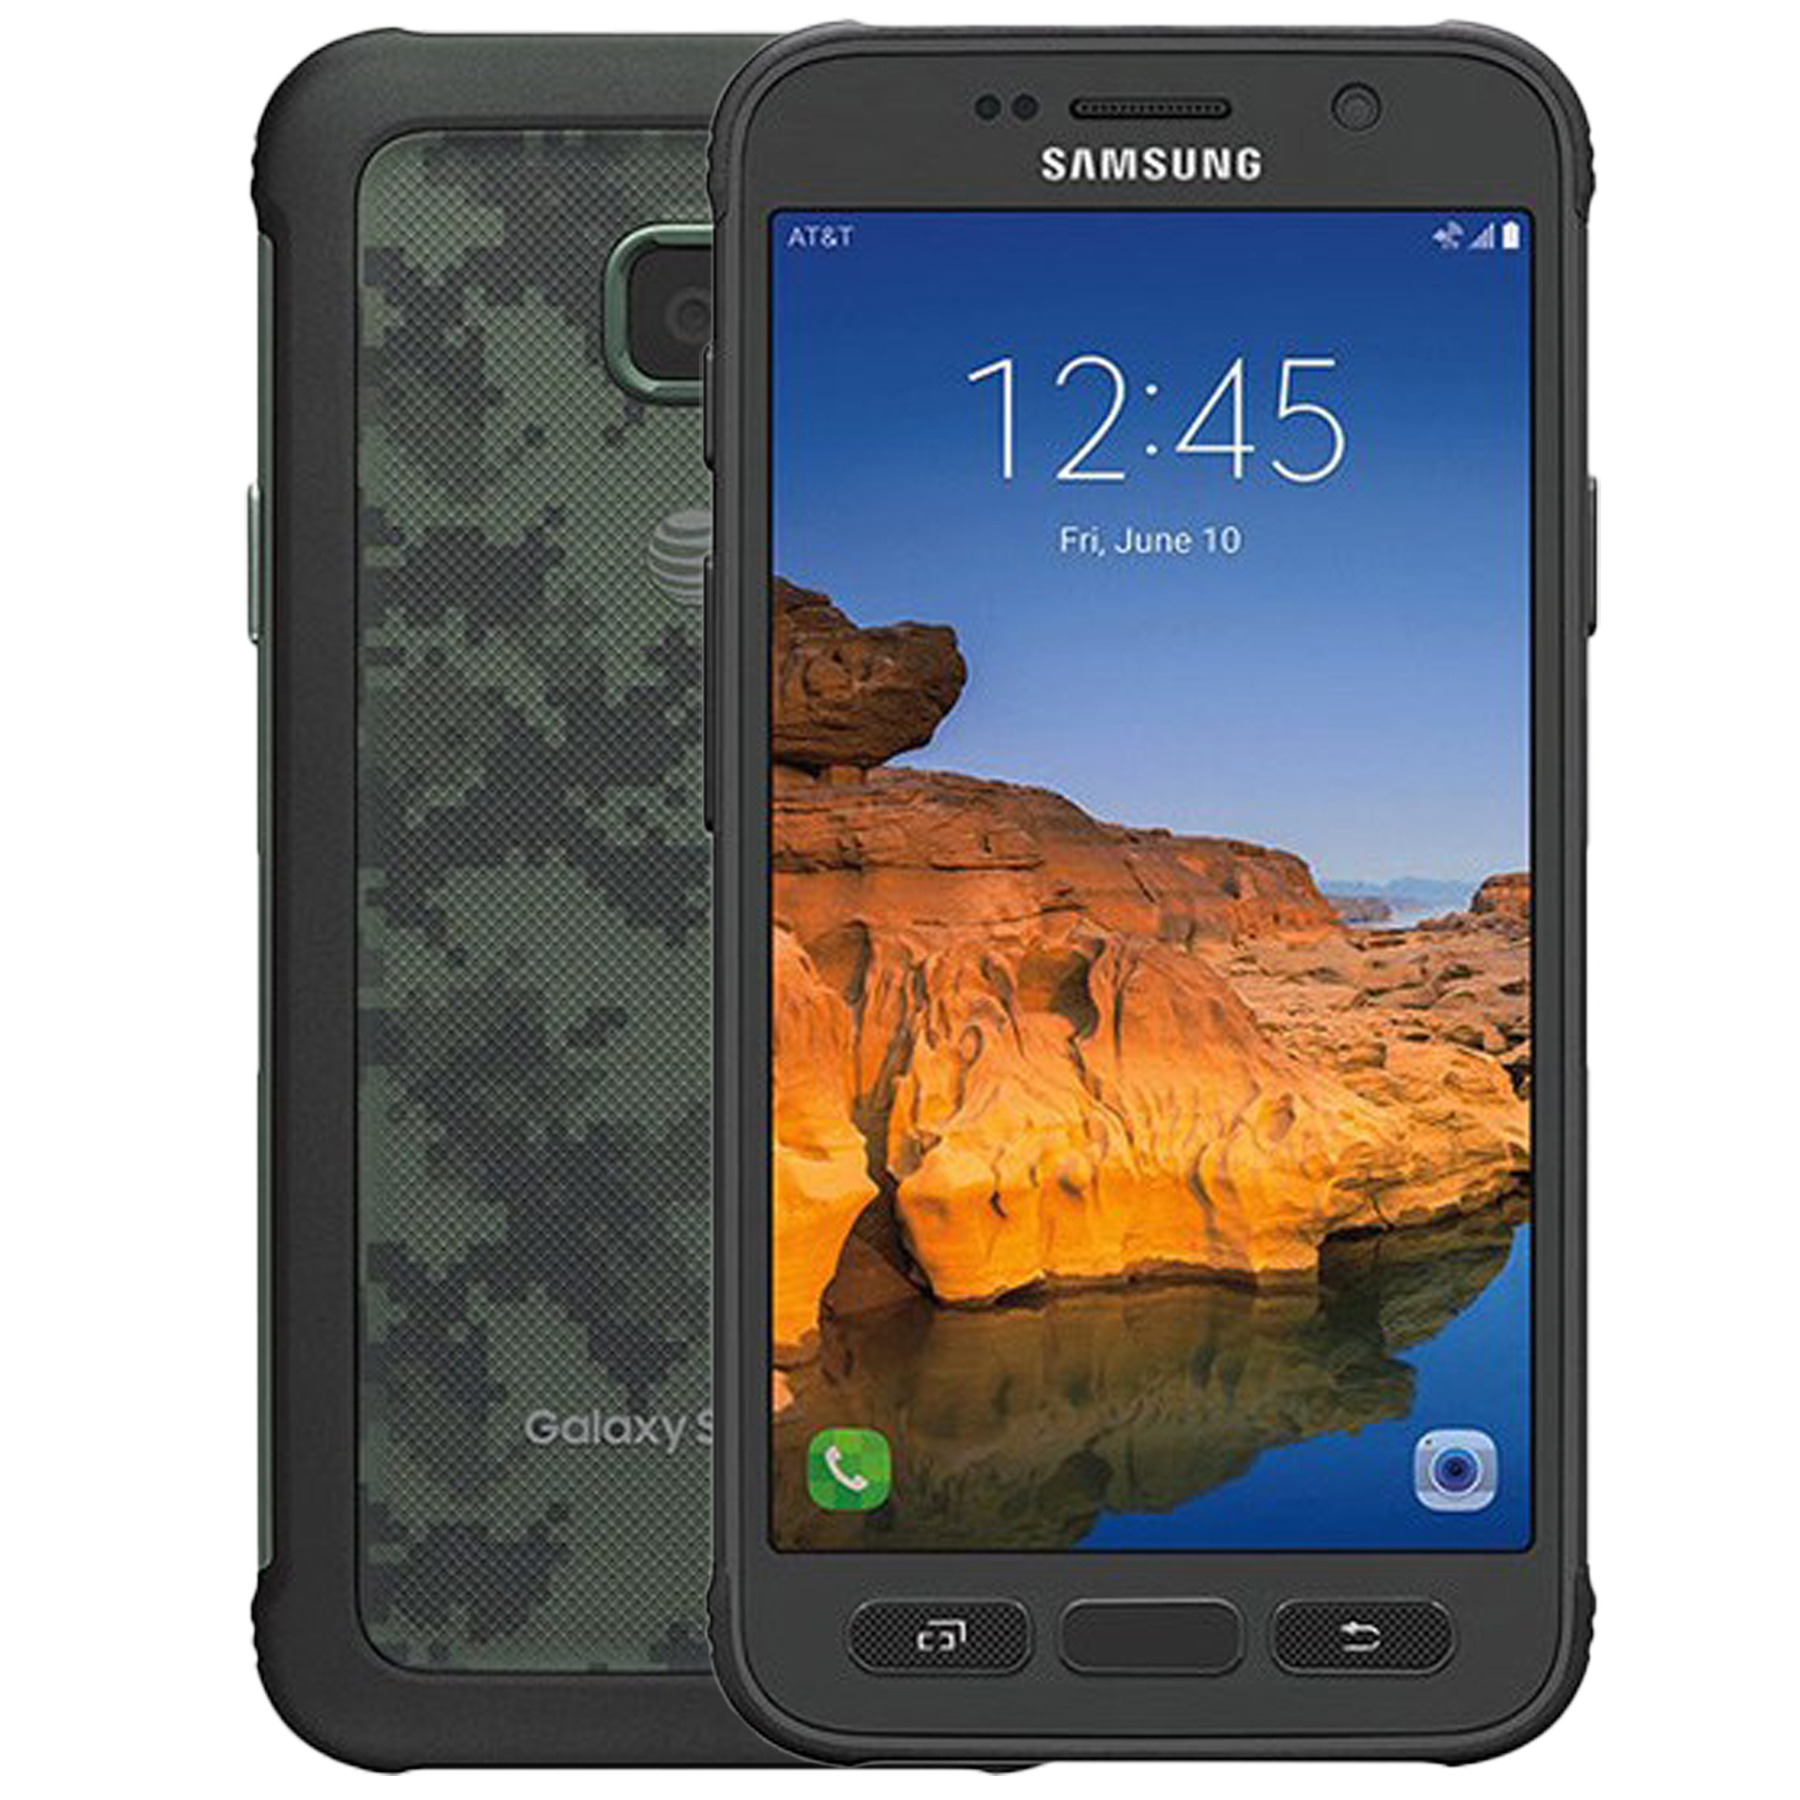 گوشی موبایل سامسونگ مدل Galaxy S7 Active